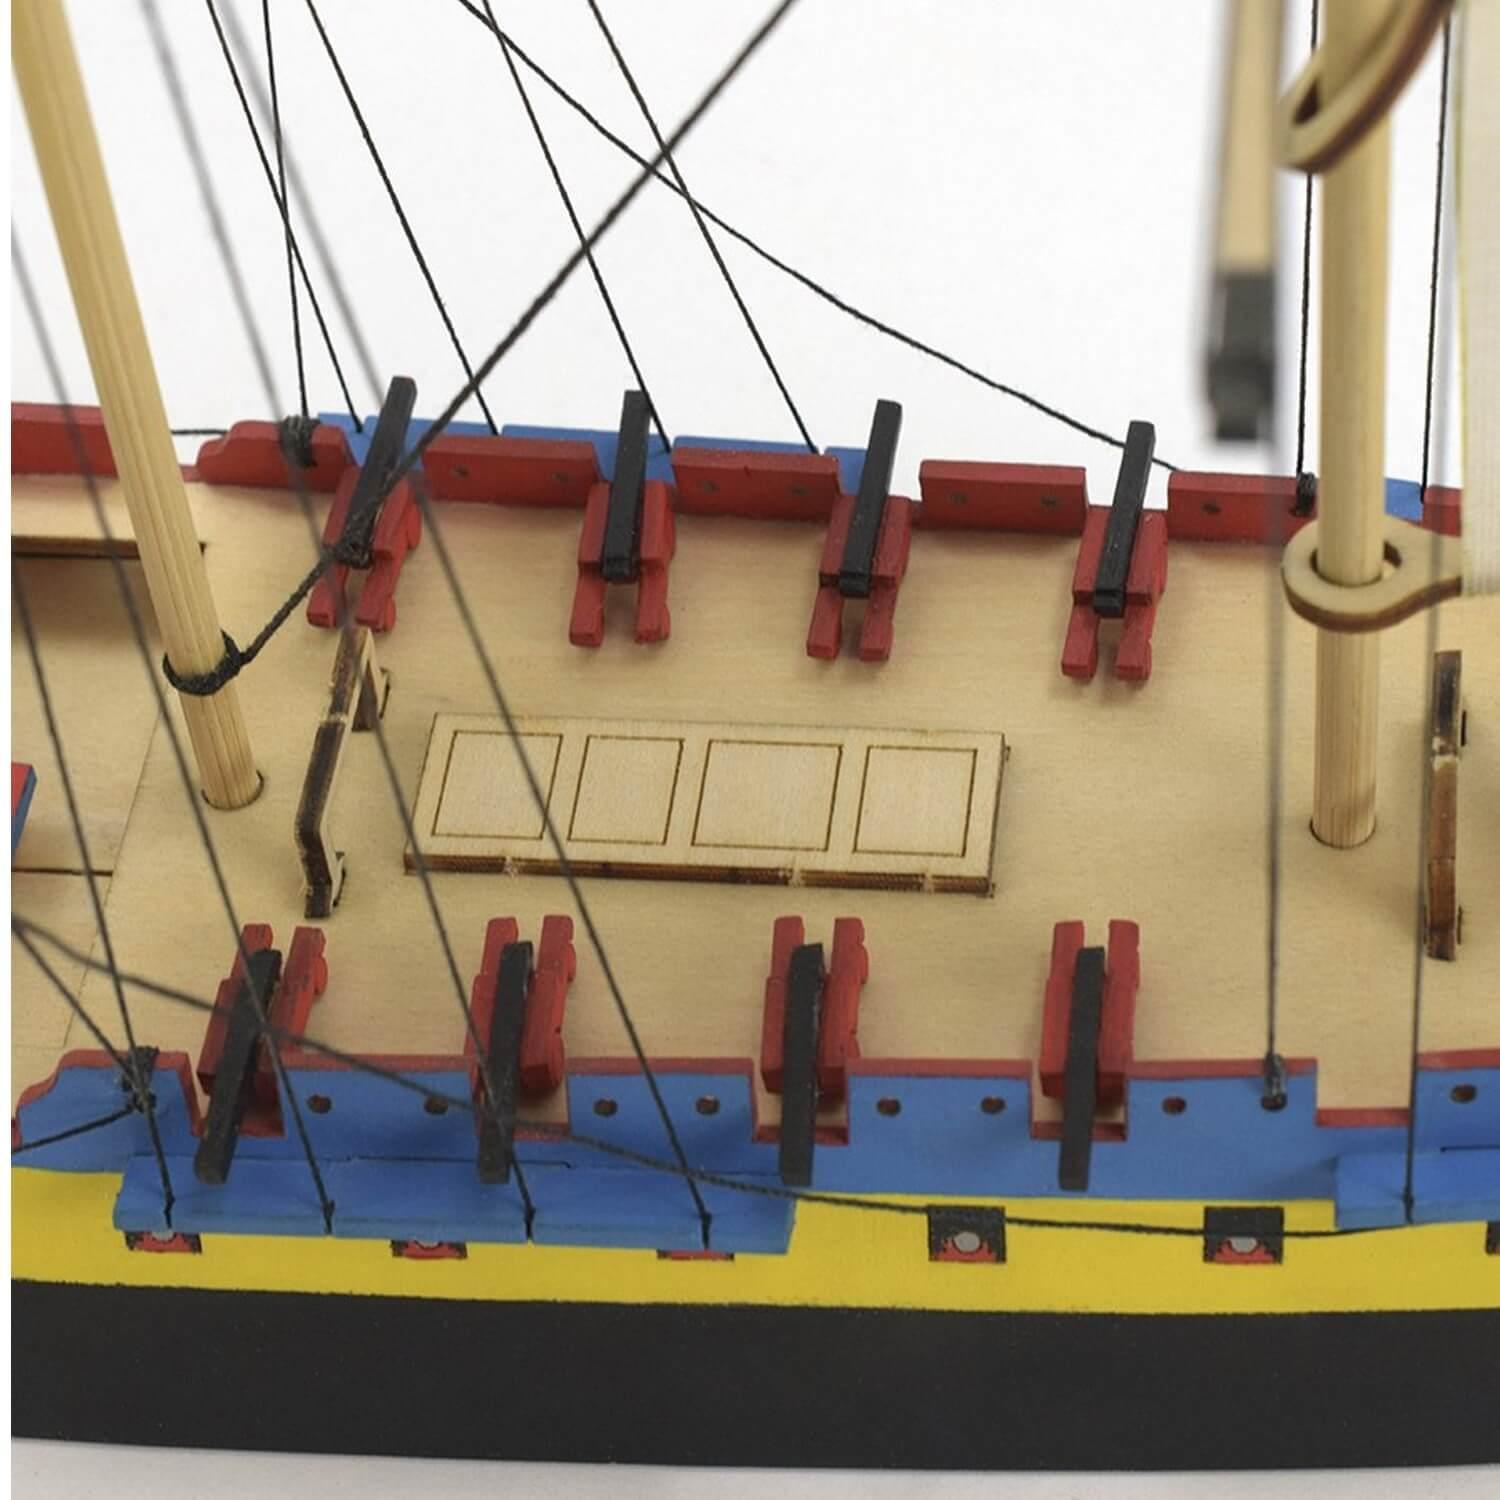 Maquette bateau en bois : L'Hermione La Fayette